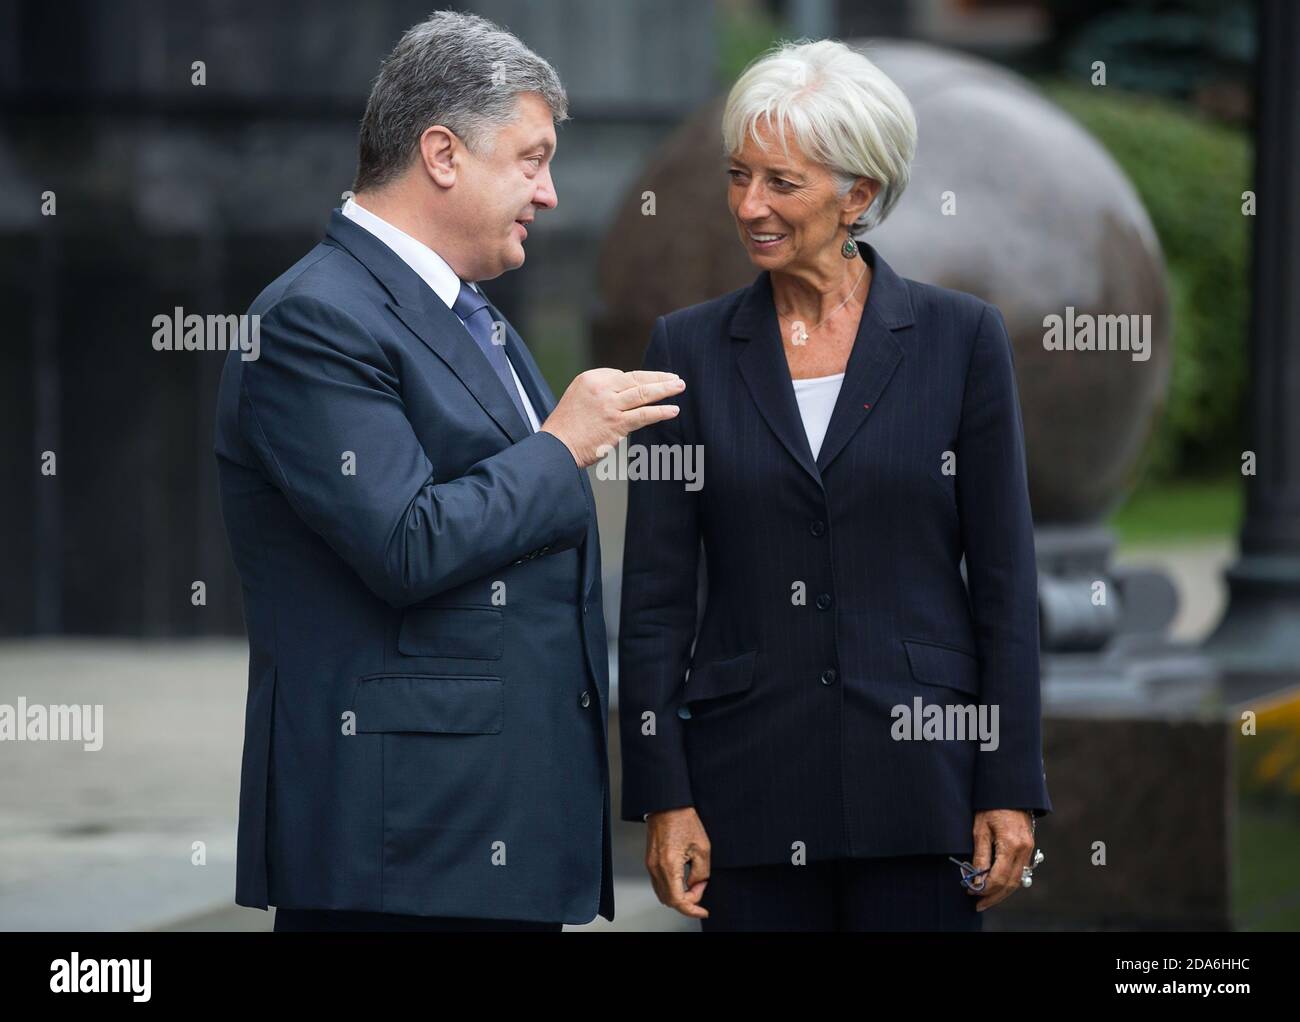 KIEW, UKRAINE - 06. Sep 2015: Präsident der Ukraine Petro Poroschenko und Geschäftsführerin des Internationalen Währungsfonds, Christine Lagarde, während eines Treffens in Kiew Stockfoto